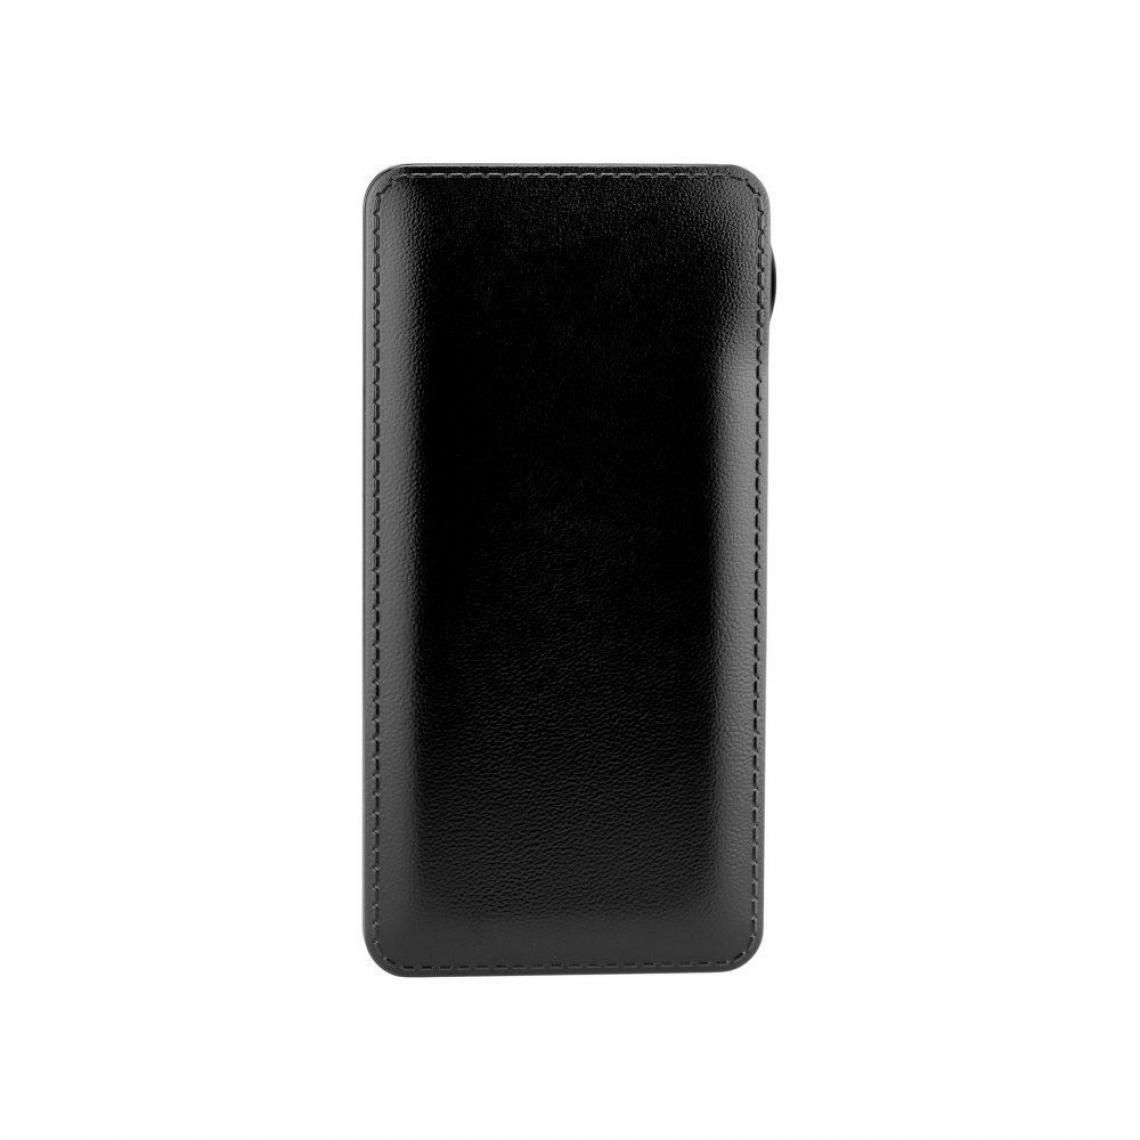 Ozzzo - Chargeur batterie externe 20000 mAh powerbank ozzzo noir pour LG Q6 - Autres accessoires smartphone